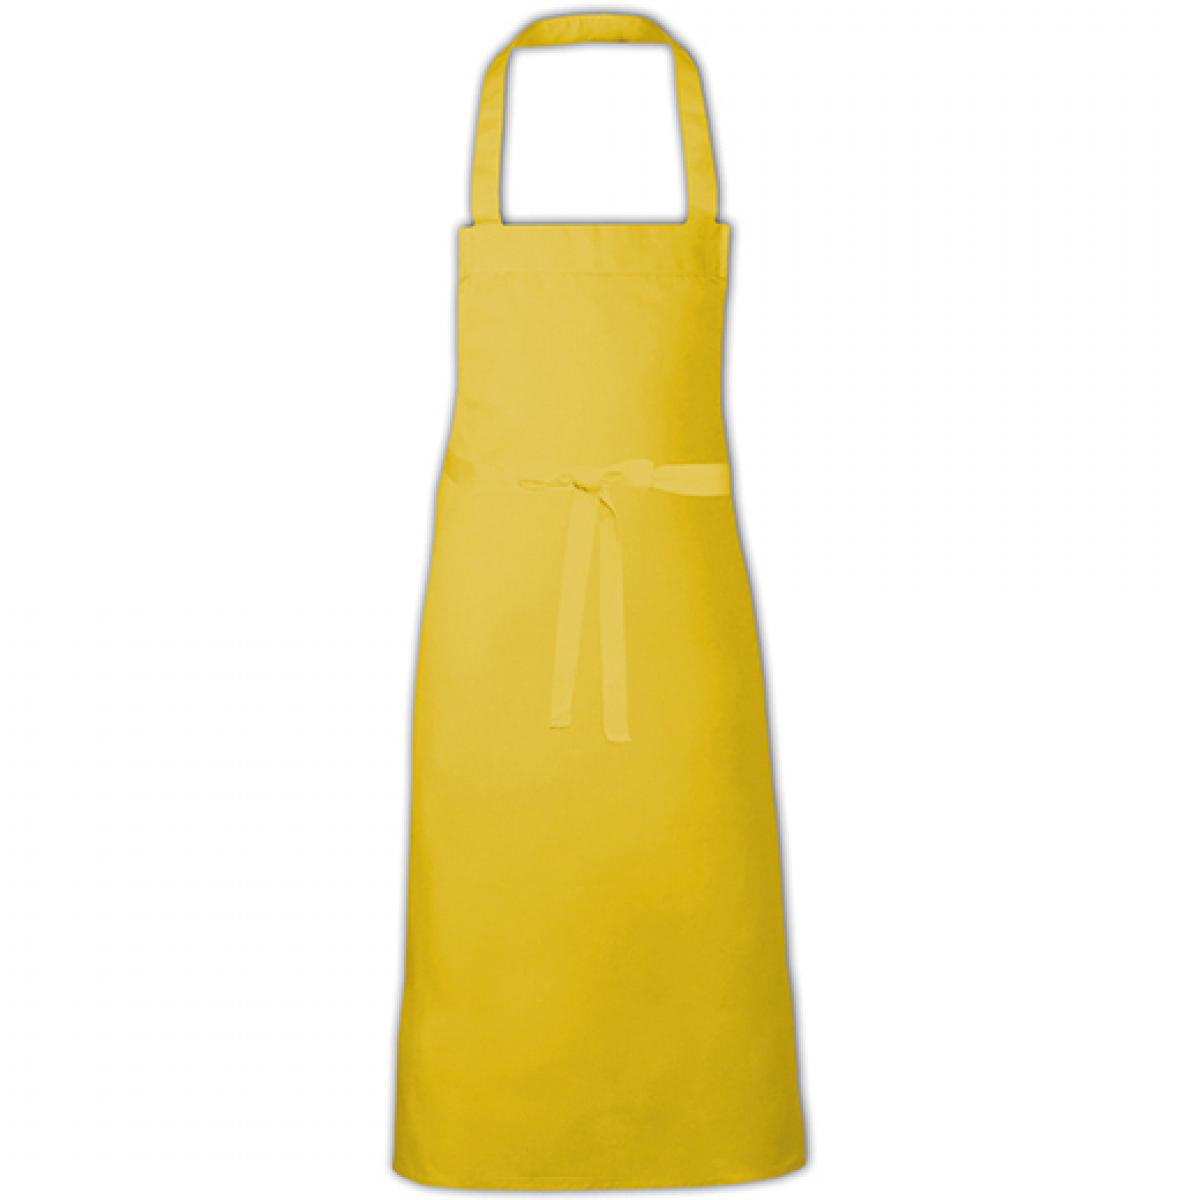 Hersteller: Link Kitchen Wear Herstellernummer: BBQ9090EU Artikelbezeichnung: Barbecue Apron XB - 90 x 90 cm - waschbar bis 60 °C Farbe: Yellow